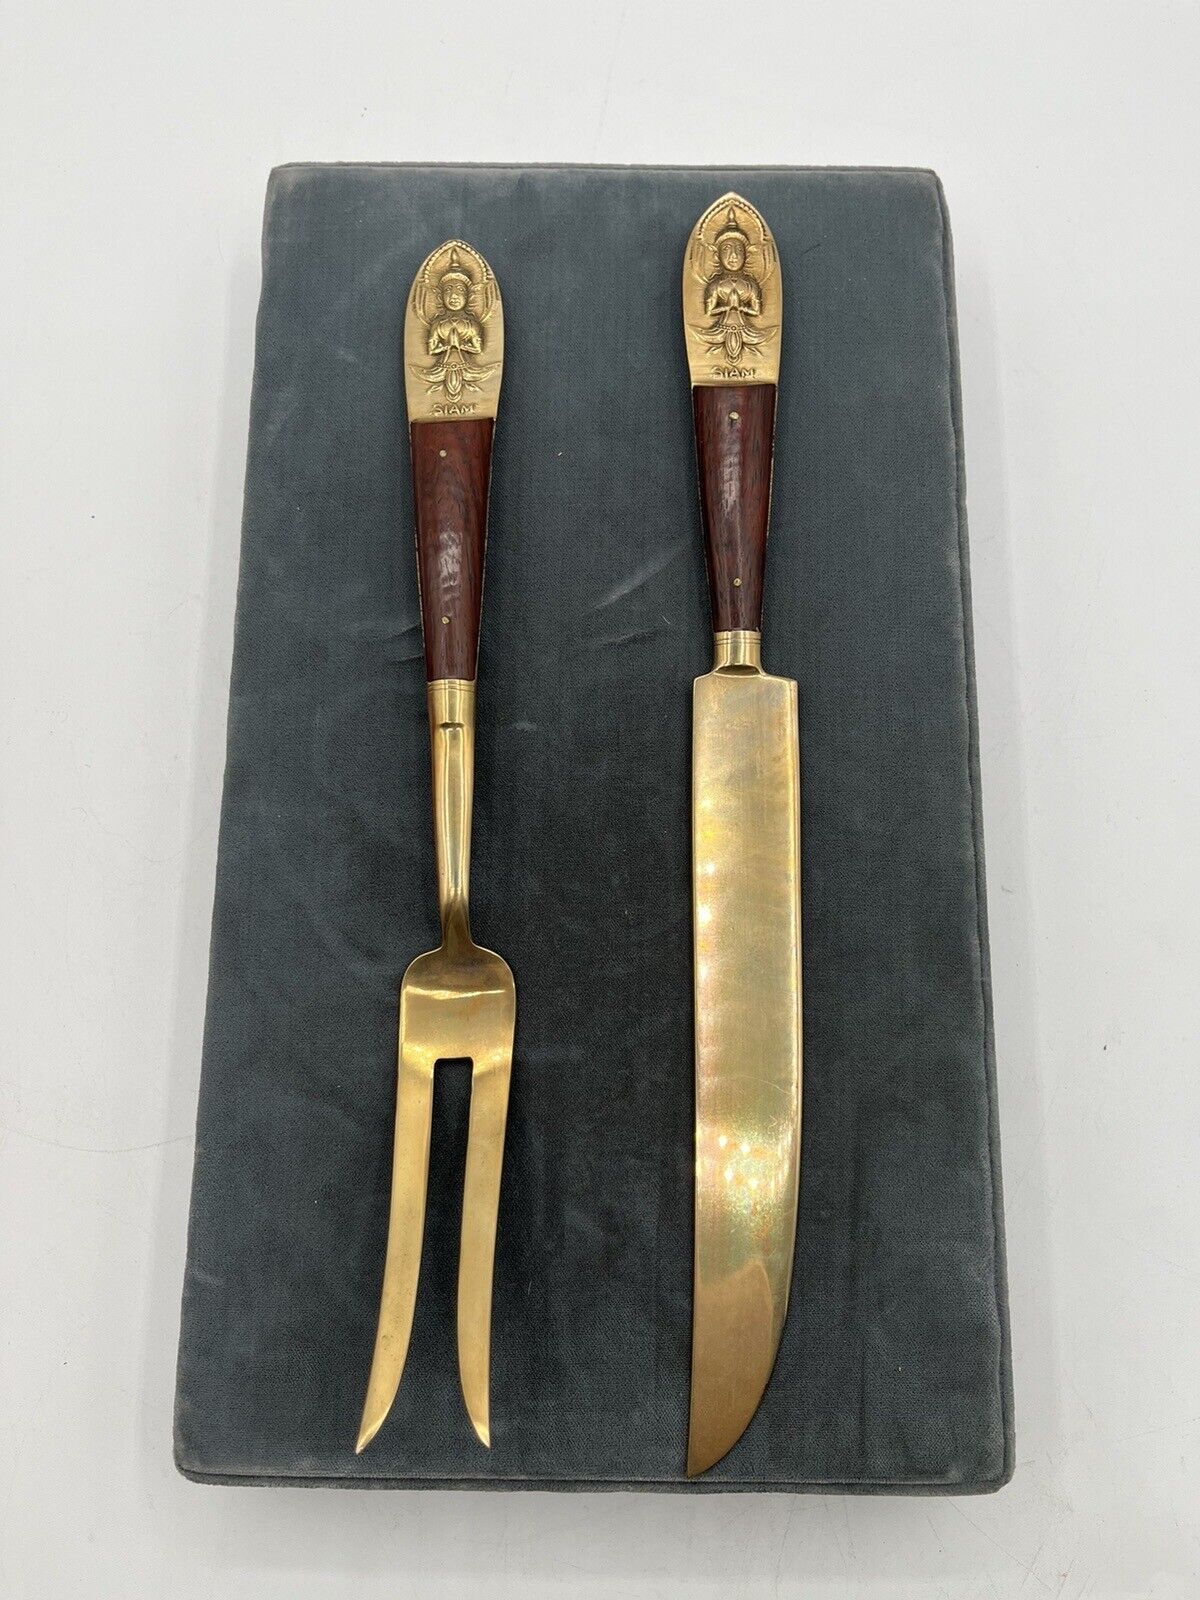 VTG Siam Meat Fork & Knife Set Brass/ Partial Wood Handle